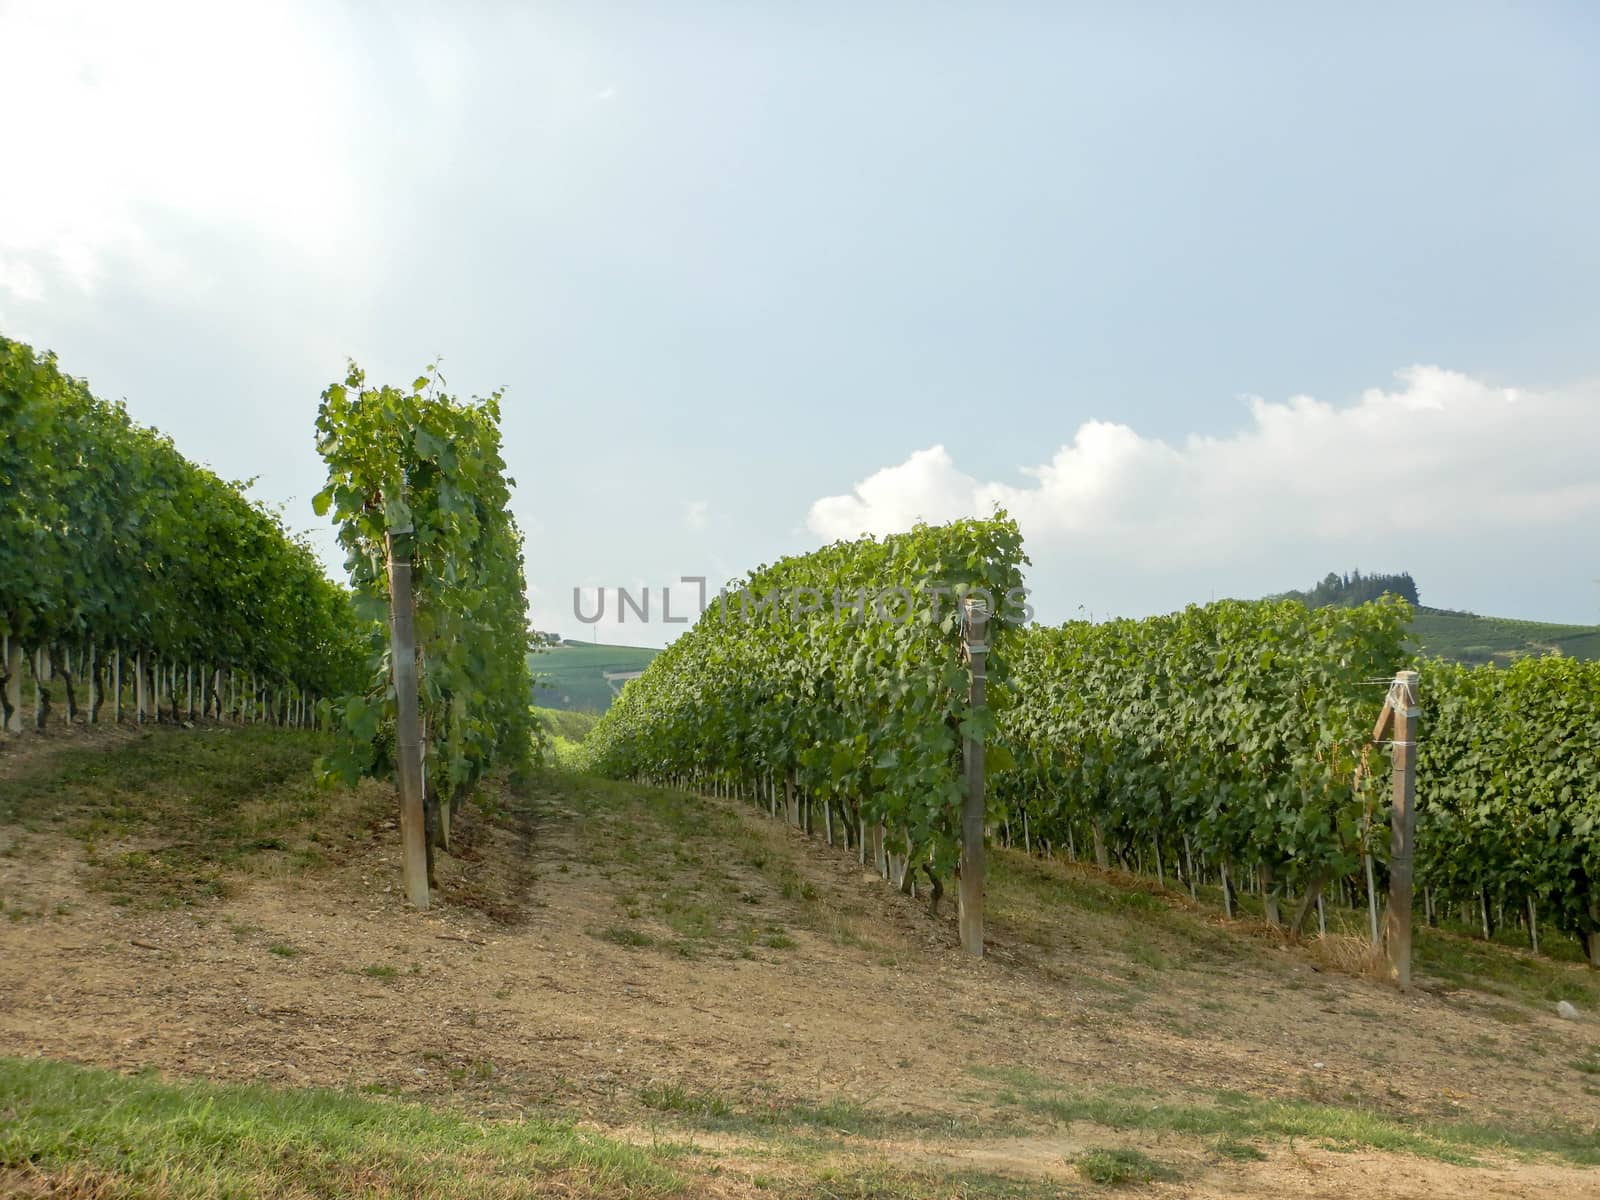 Vineyards around La Morra, Piedmont - Italy by cosca